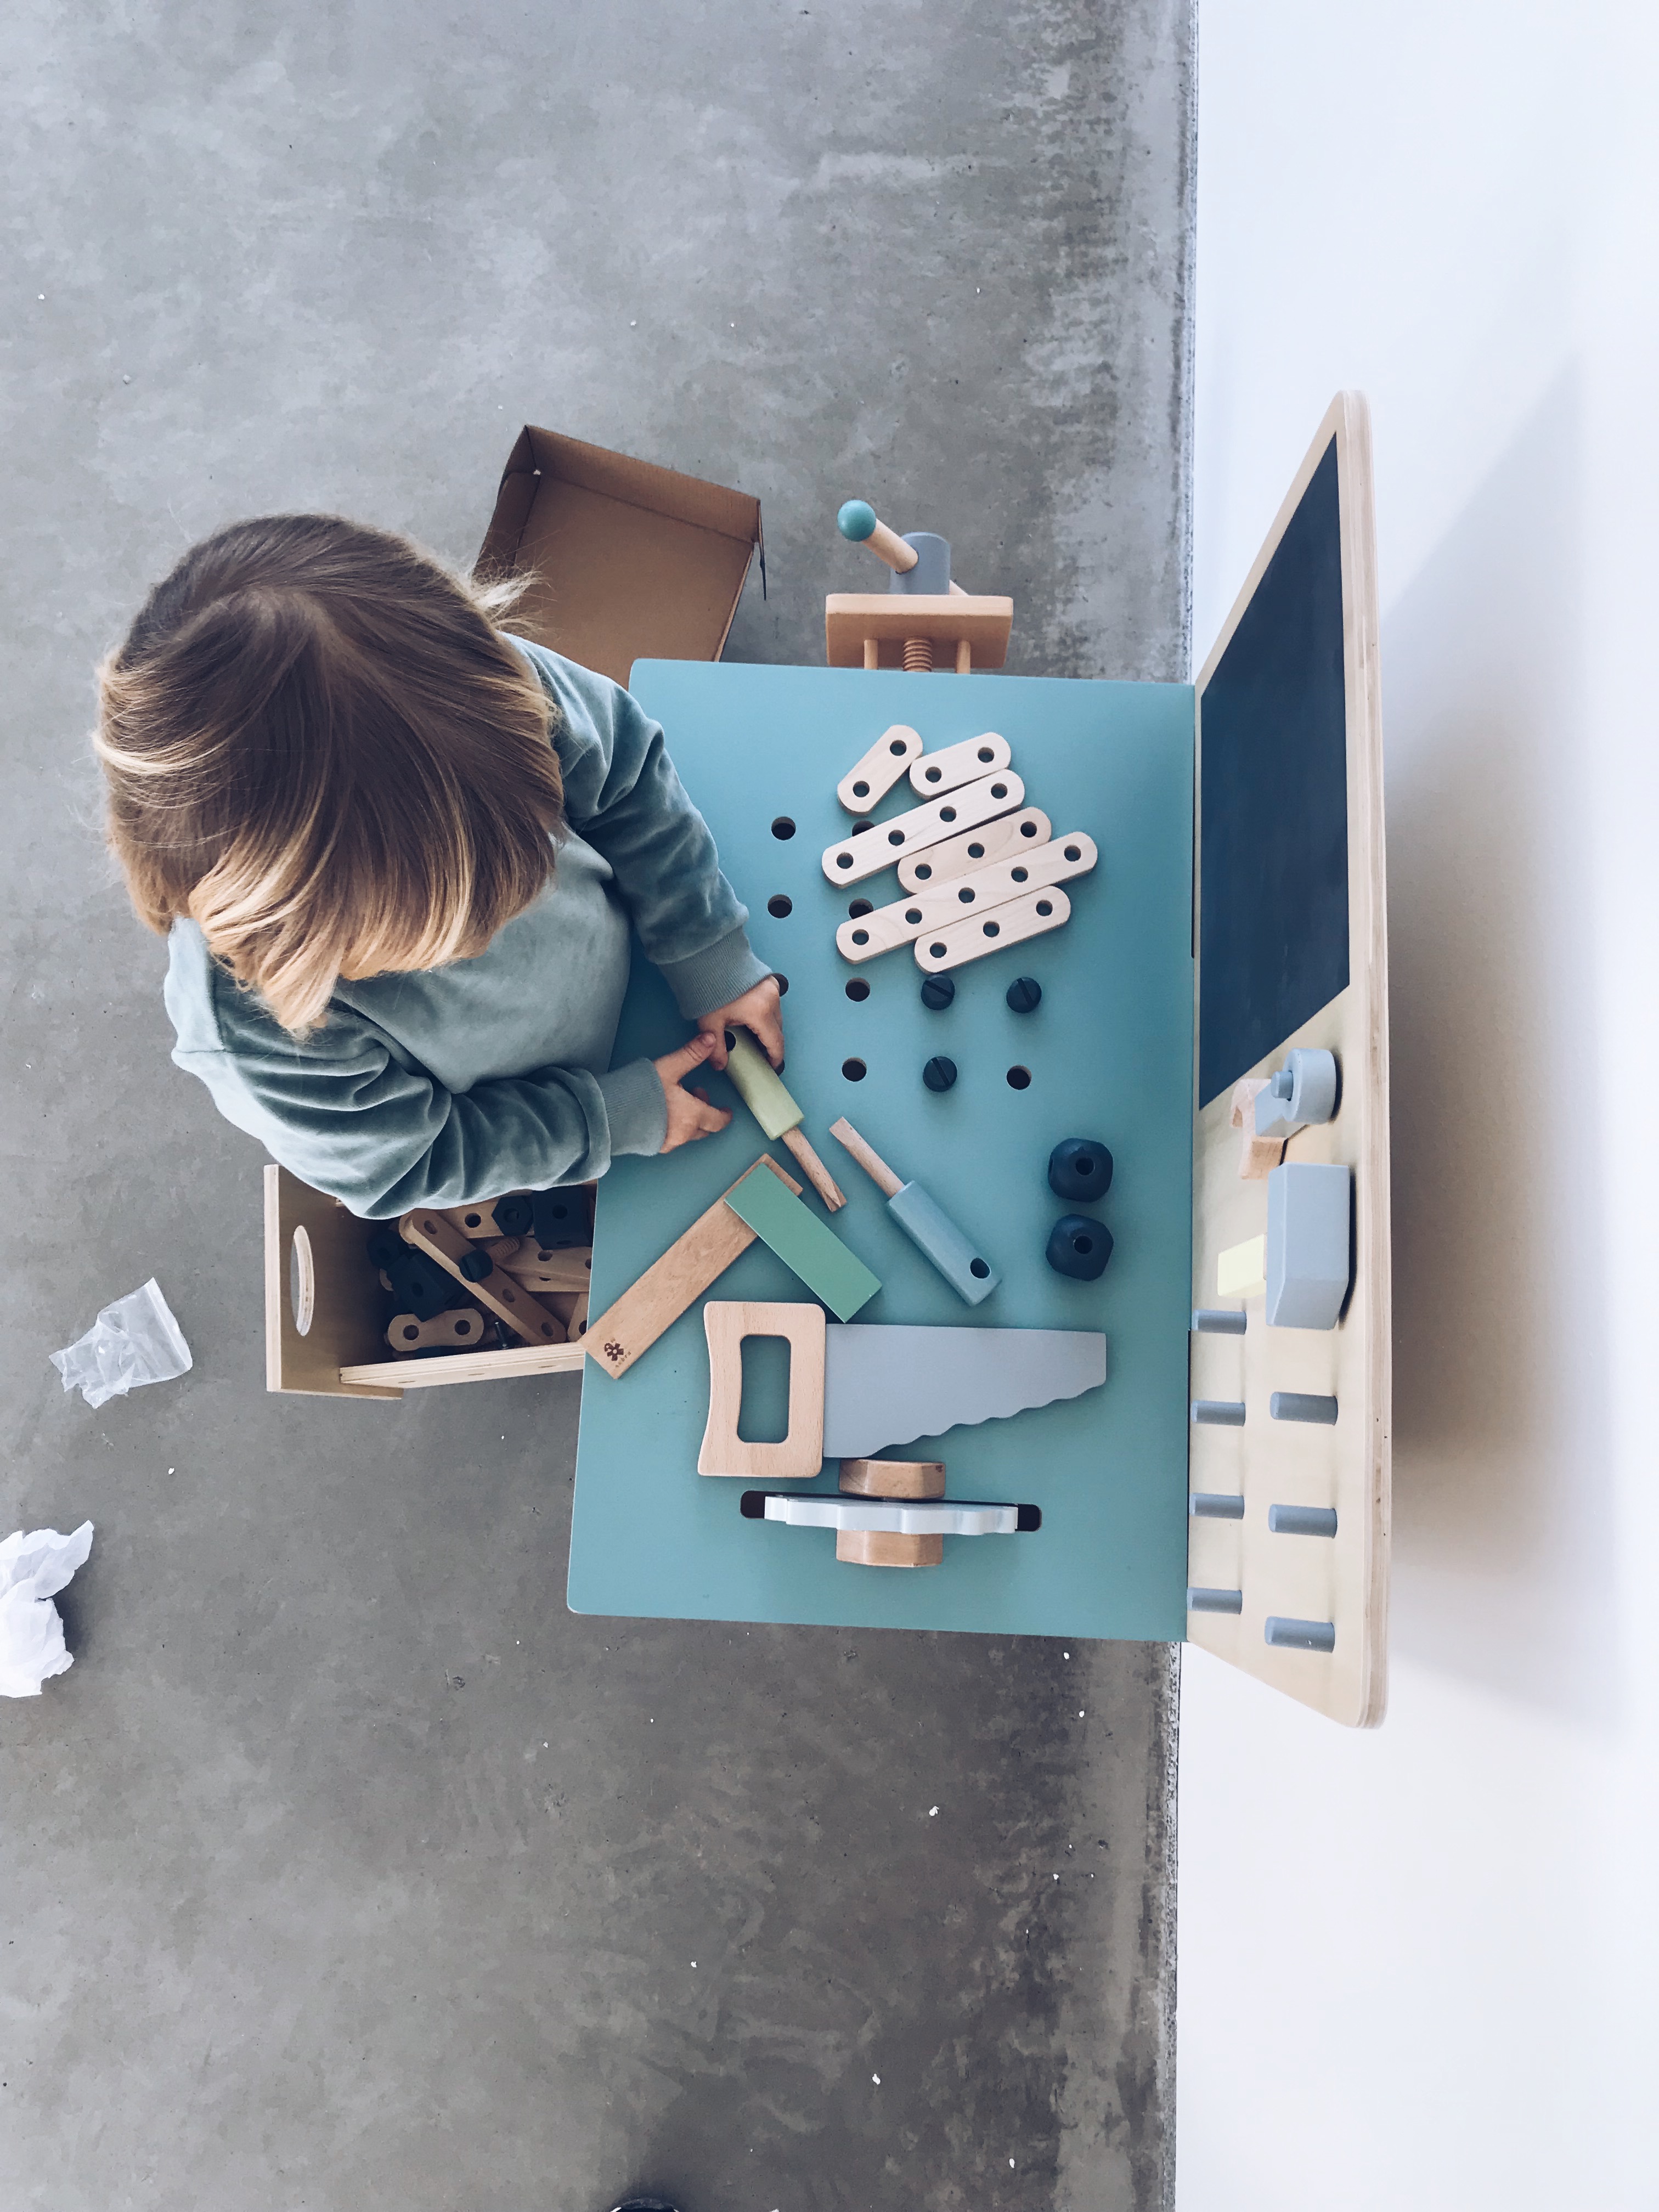 Kind Beton weiß spielen bauen Baukasten Holz Detail Design Interior